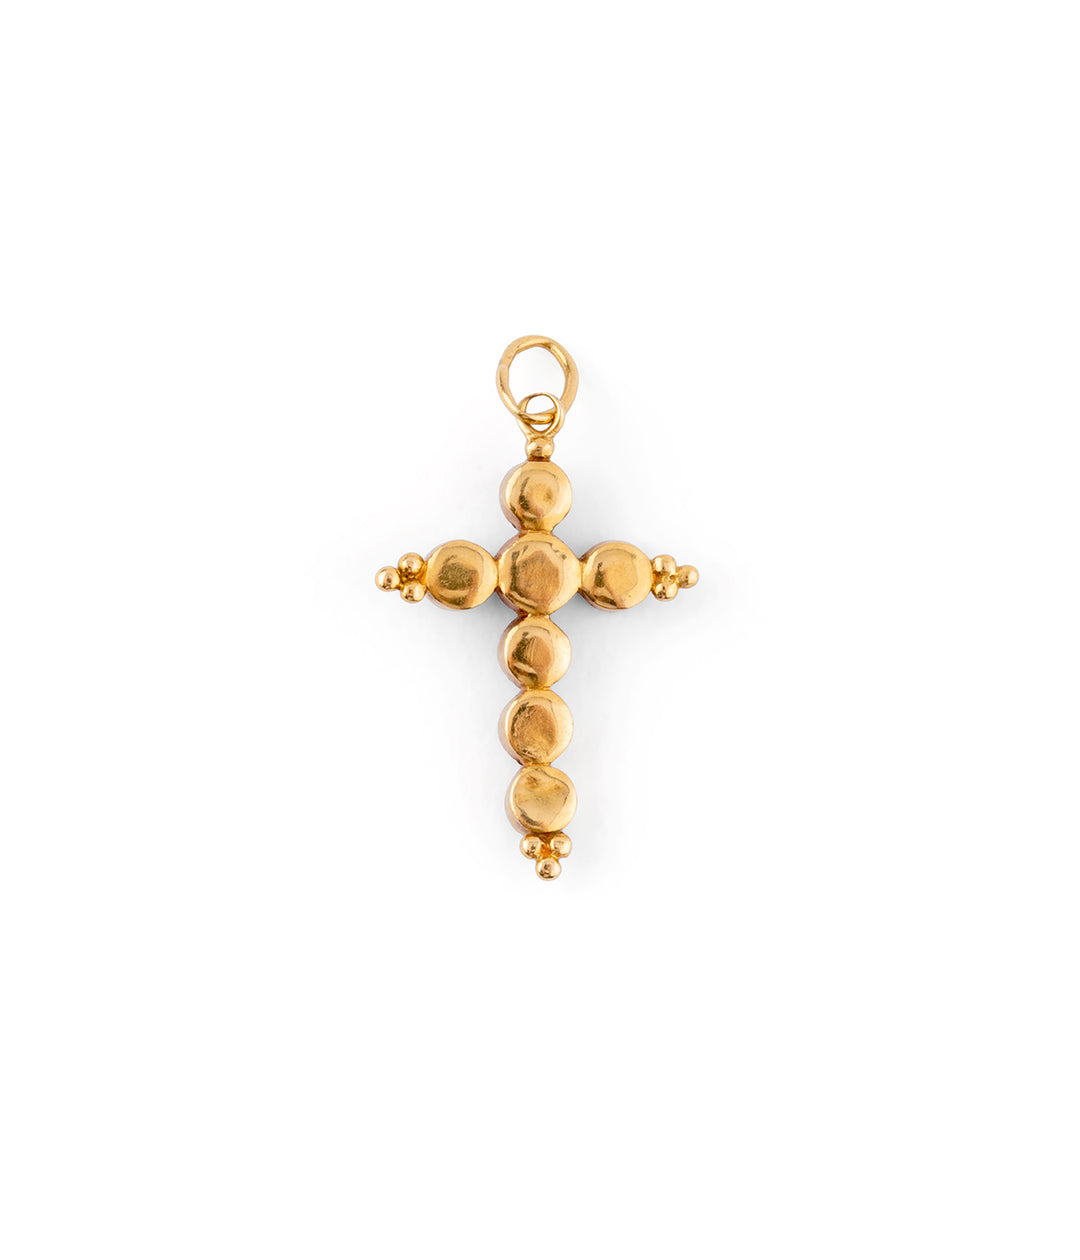 Pendentif croix ancien améthyste "Rosie" dos - Caillou Paris